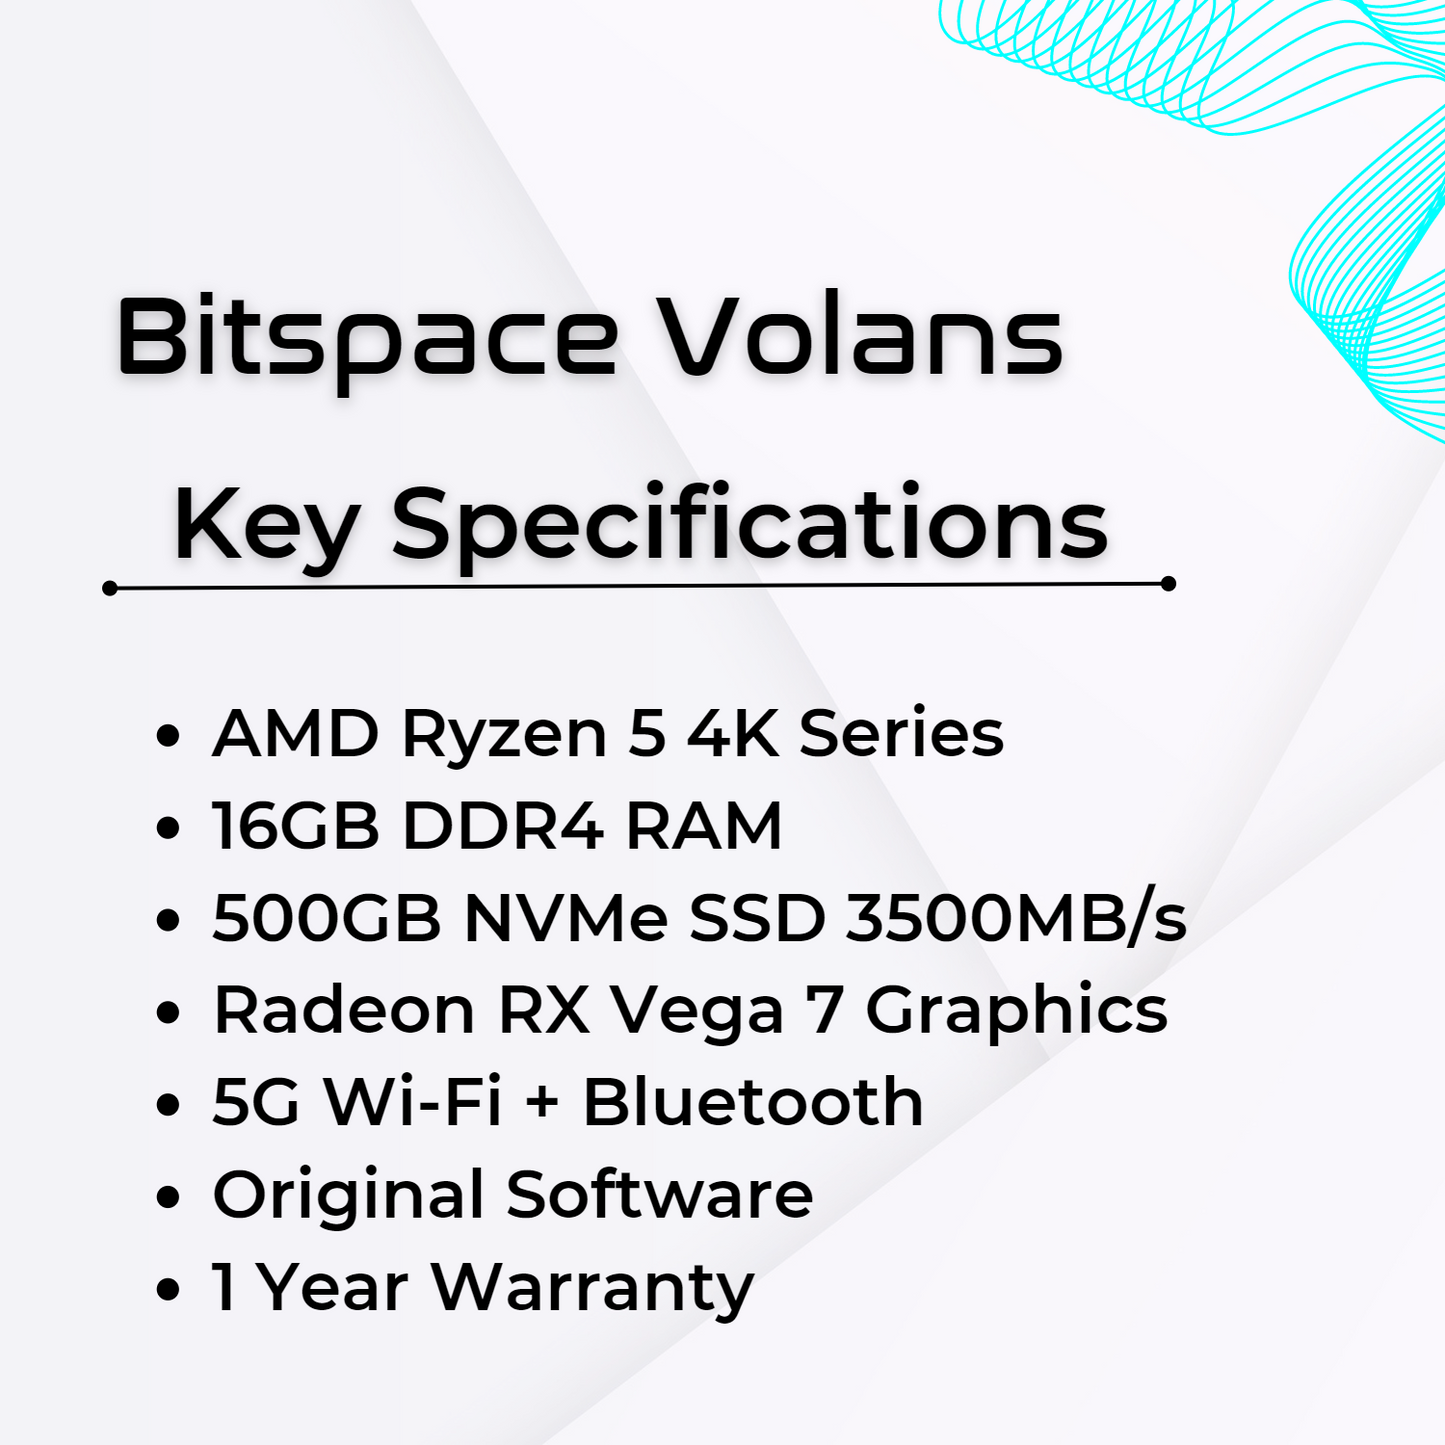 Volans (AMD Ryzen 5, 4K Series)